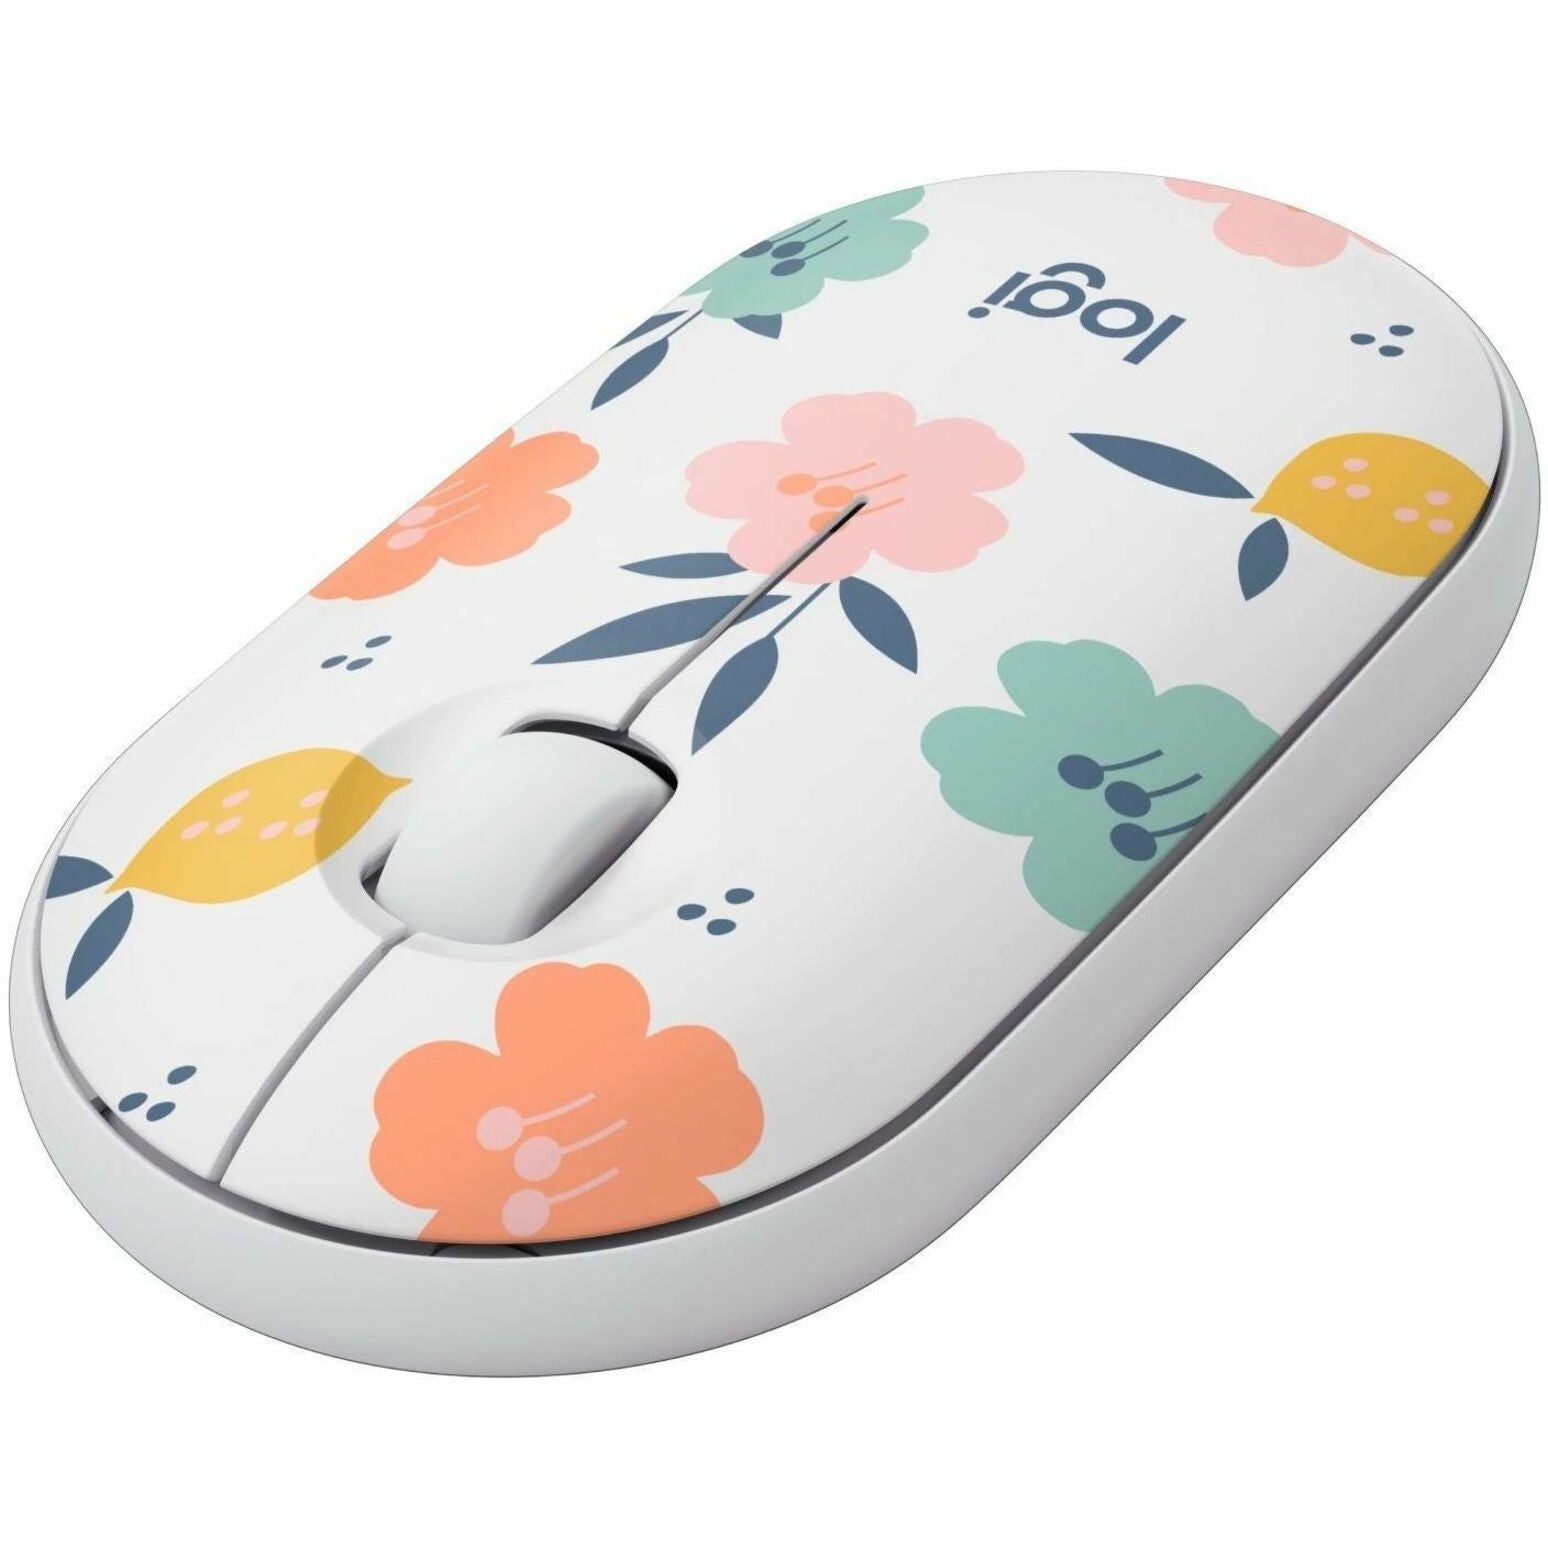 Logitech M340 Wireless Mouse Collection (Floral Bouquet) (910-007280)